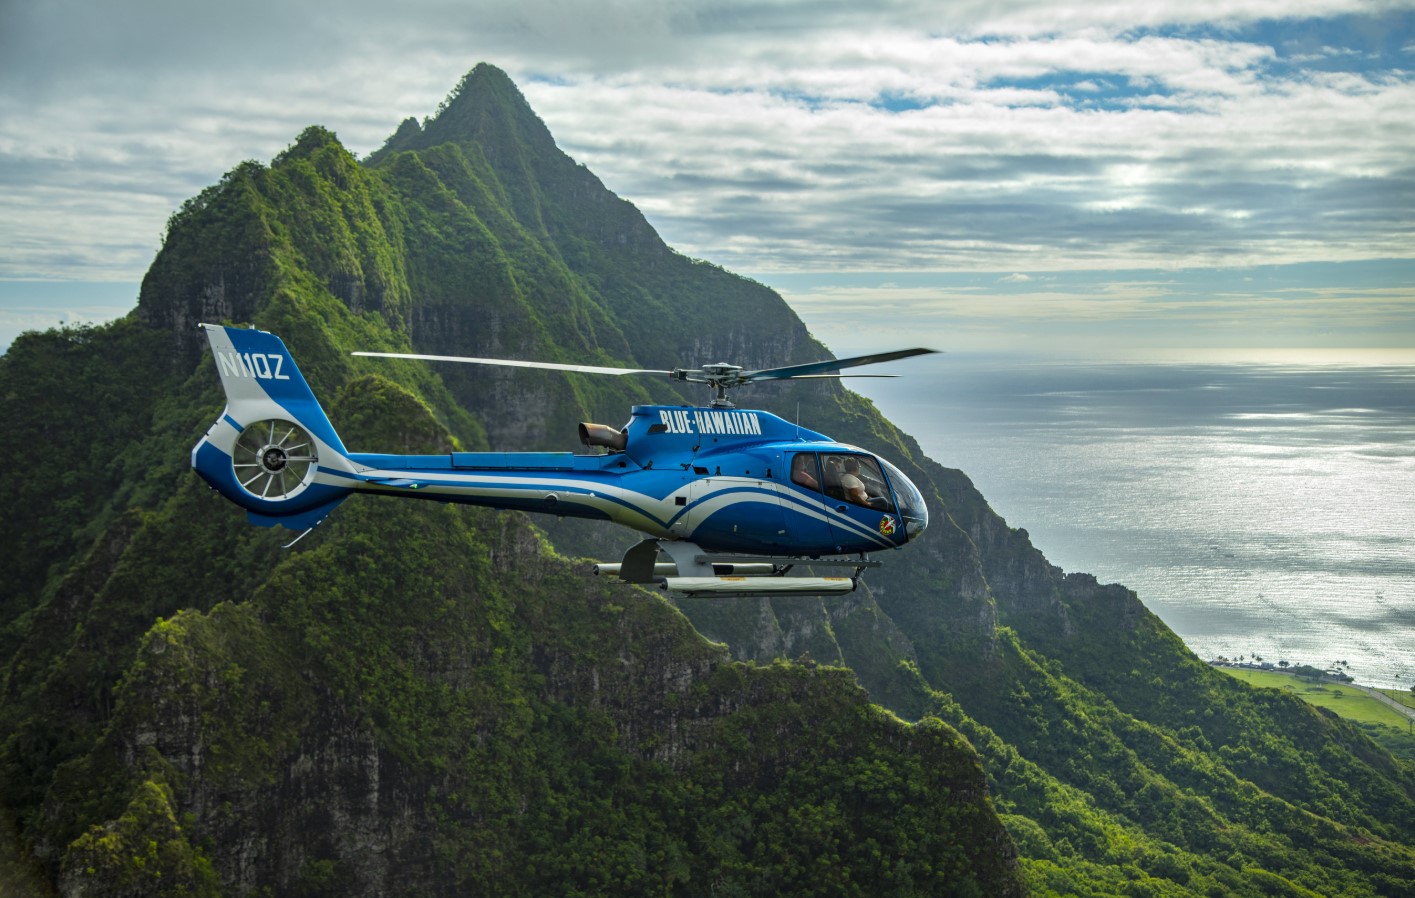 
                    
                    Lot helikopterem nad wyspą Oahu
                    
                    